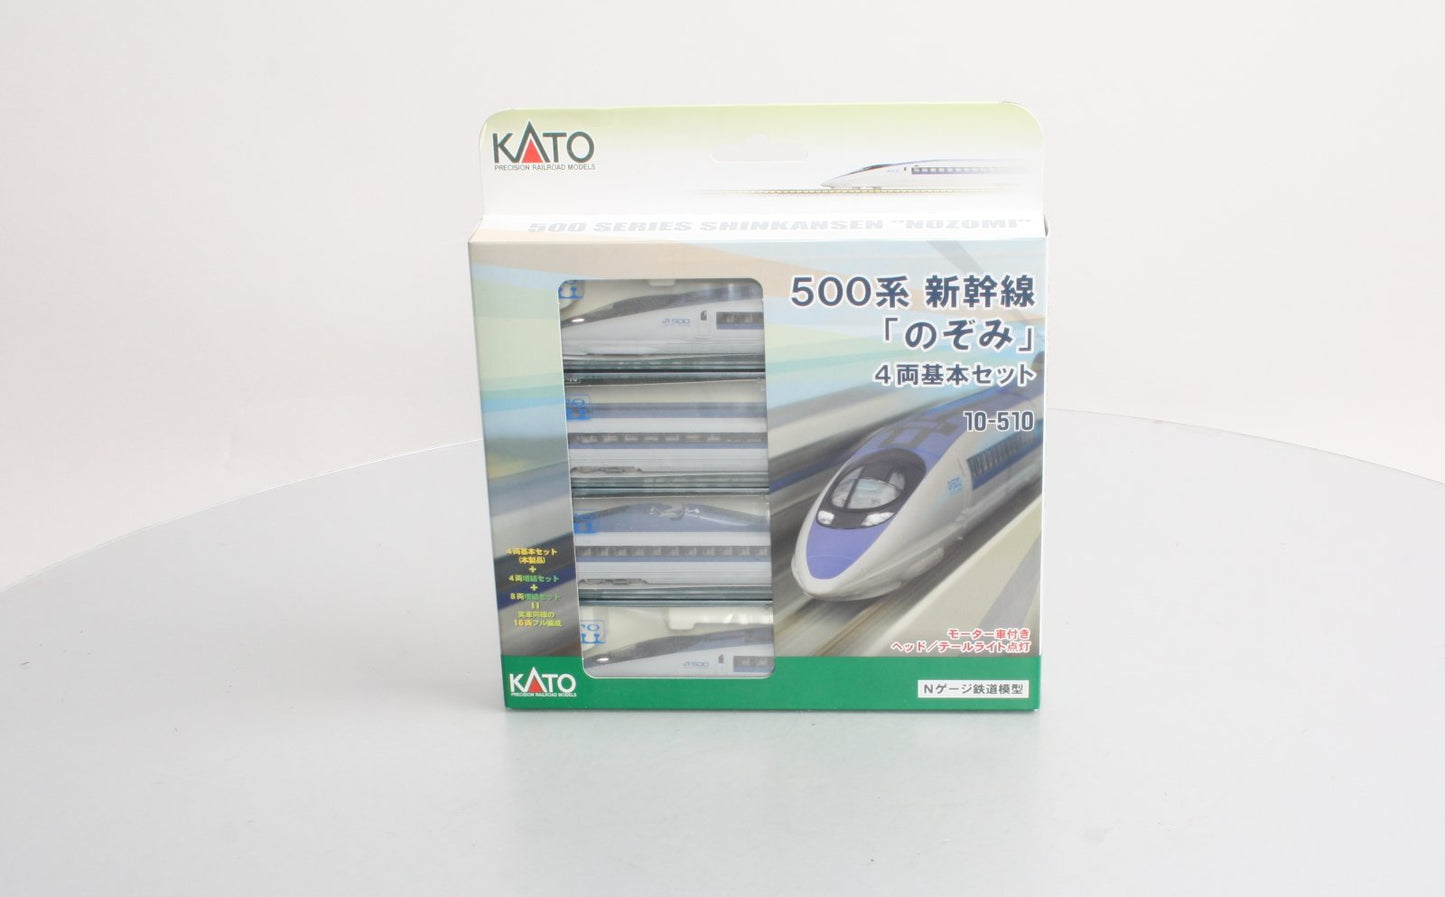 Kato 10-510 N Scale Series 500 Shinkansen "Nozomi" Bullet Train 4-Car Set LN/Box